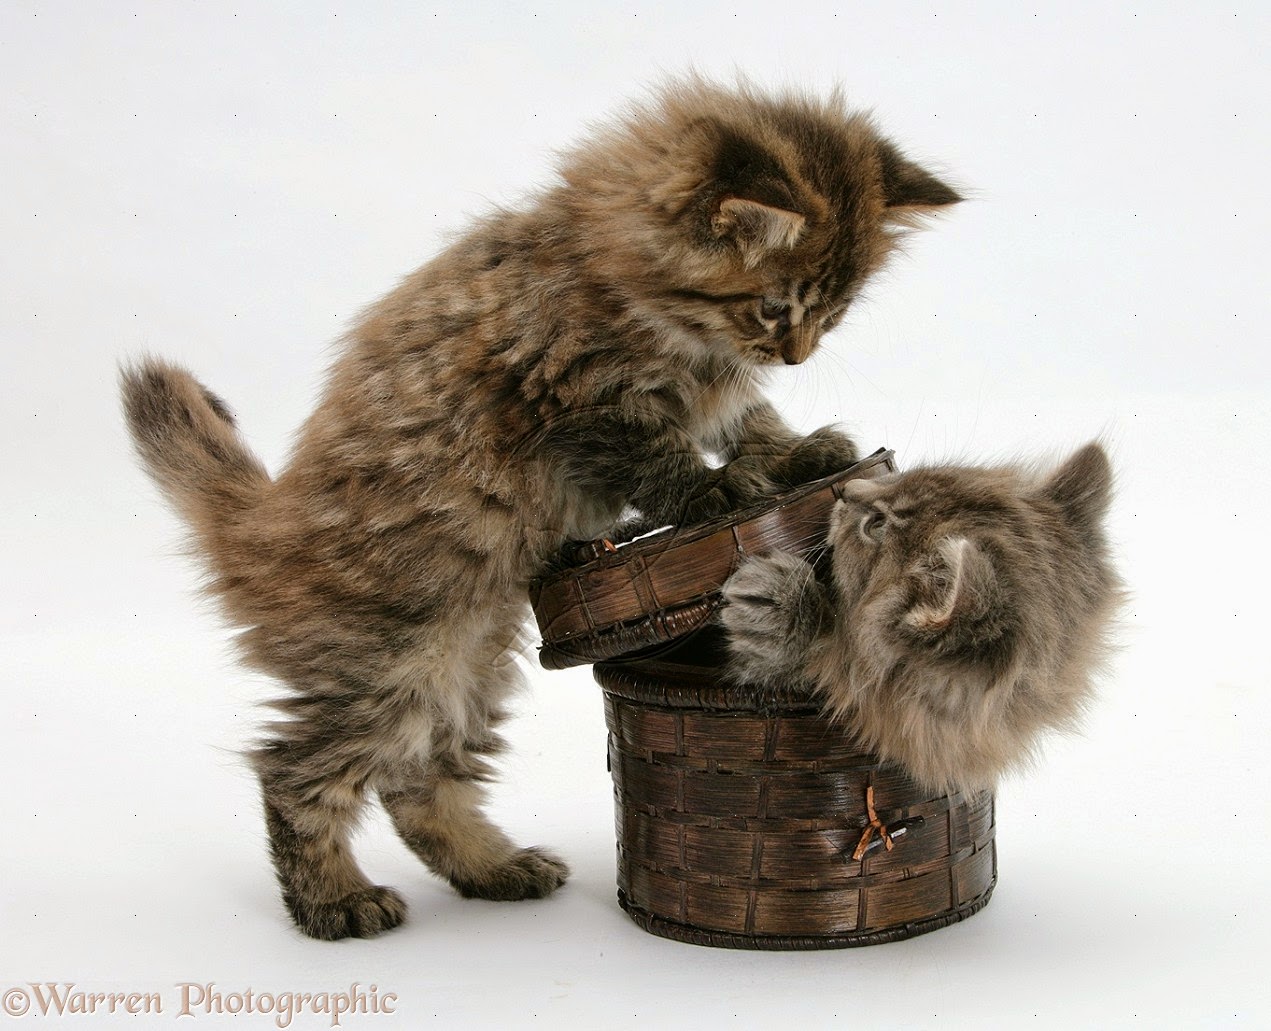 Lihat Lil Bub Kucing  Imut Tak Bisa Tumbuh Besar Merdeka 